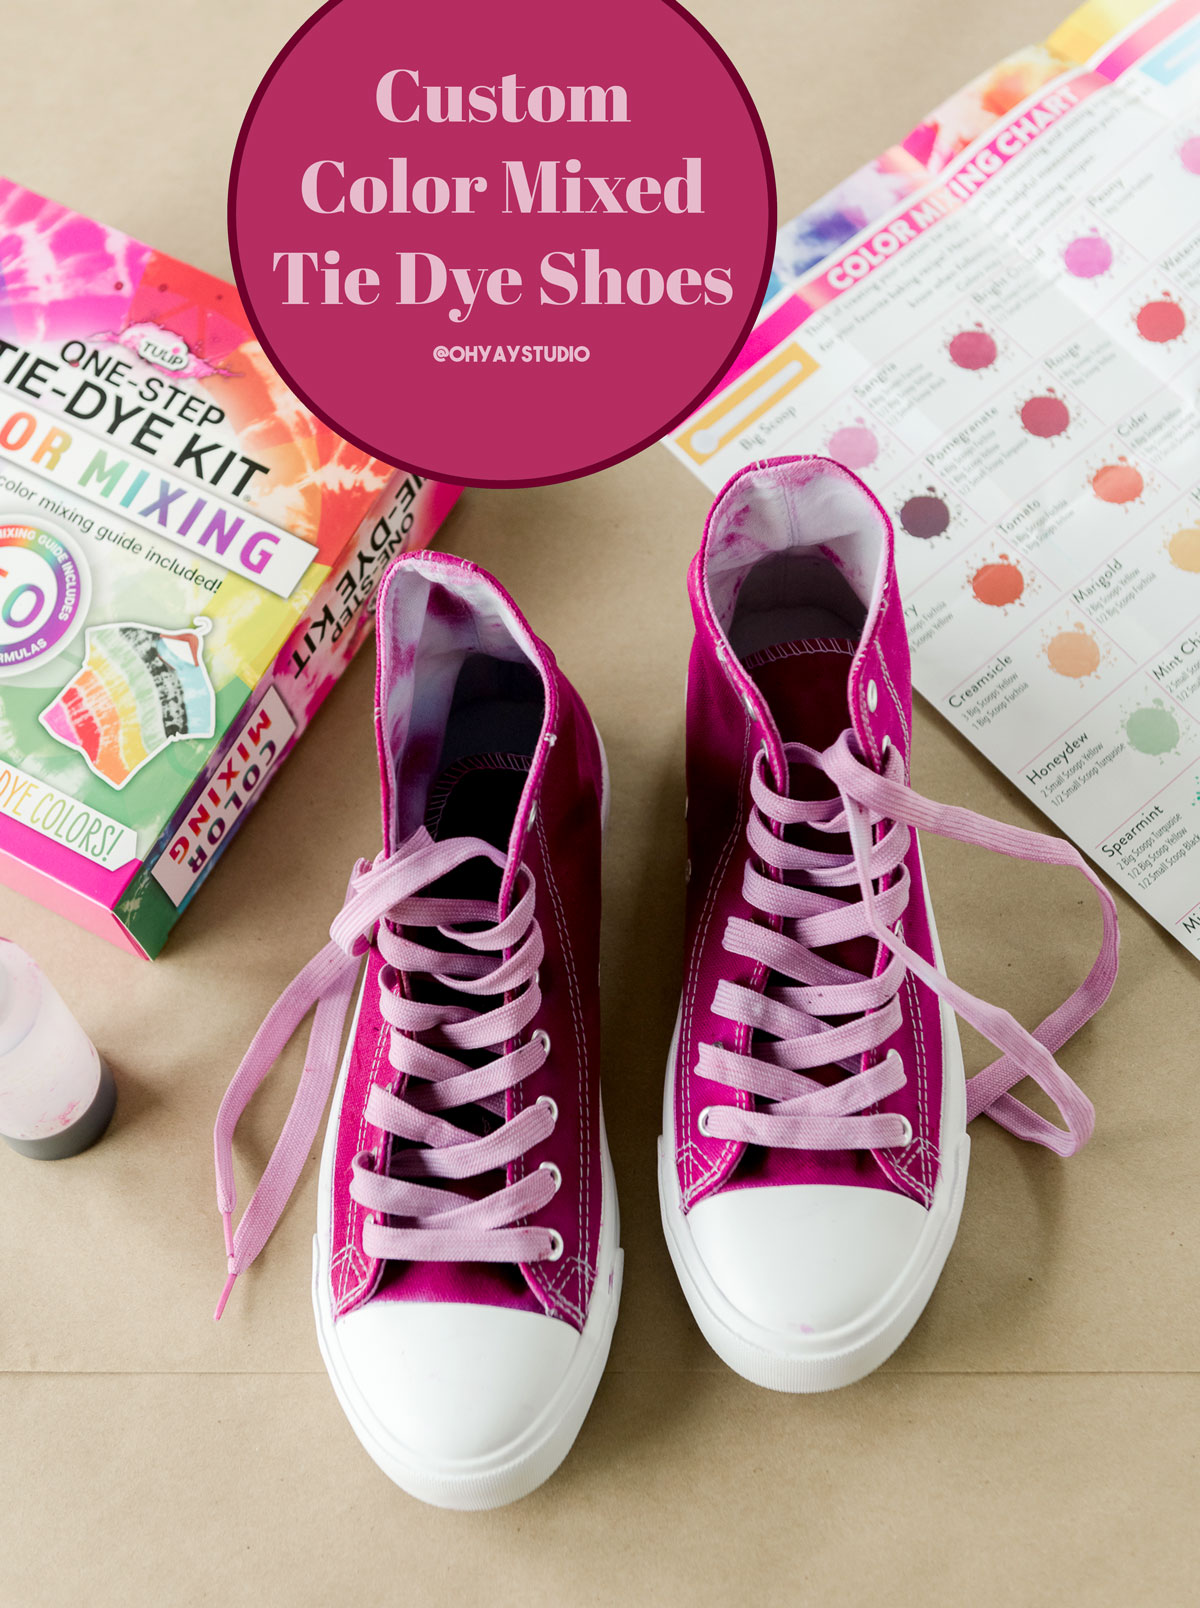 Custom Colored tie dye shoes, how to tie dye shoes, tie dye shoes, tie dyeing tips and tricks, Tie Dye DIY, tulip tie dye